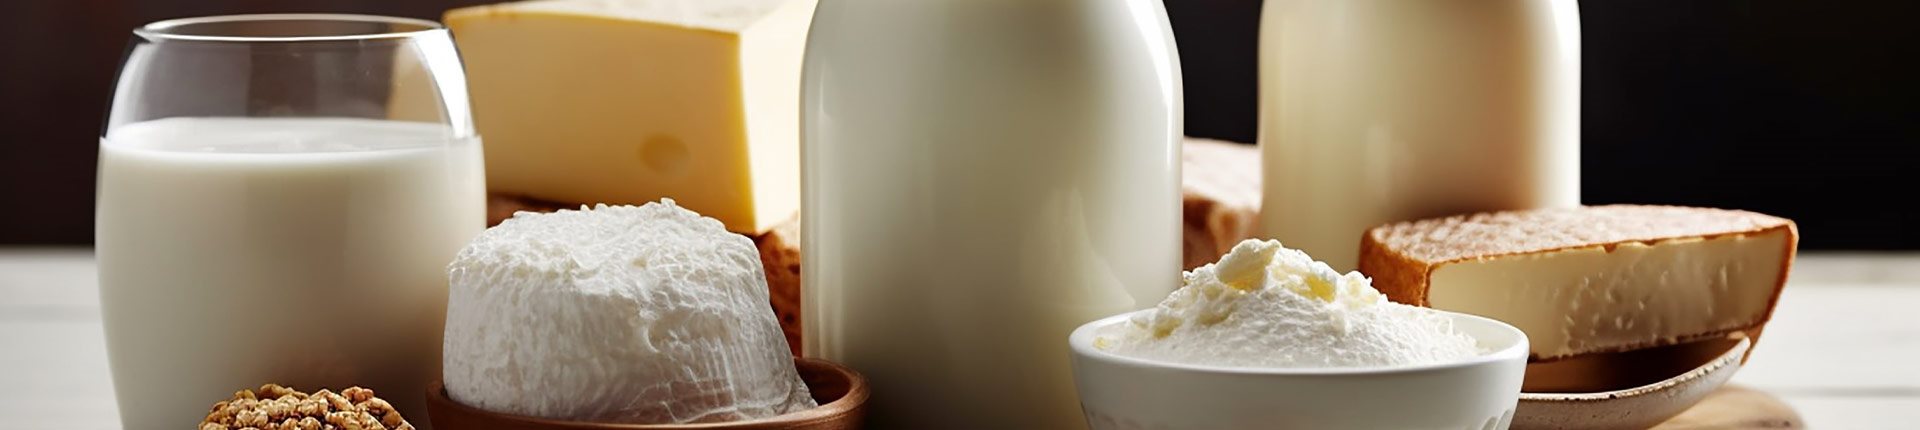 Nietolerancja laktozy - mleko a odżywki białkowe